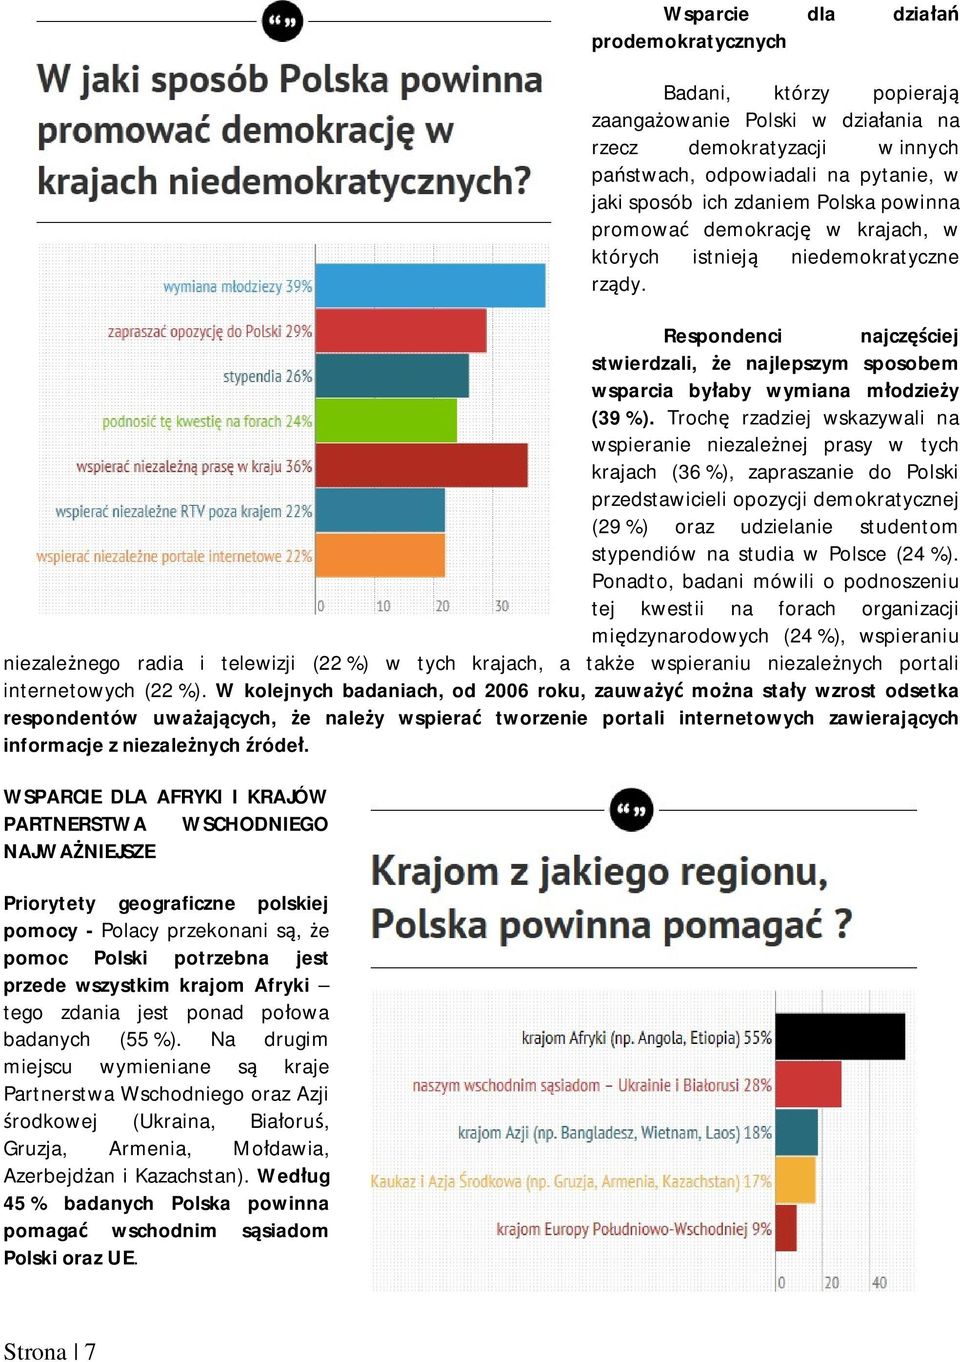 Troch rzadziej wskazywali na wspieranie niezale nej prasy w tych krajach (36 %), zapraszanie do Polski przedstawicieli opozycji demokratycznej (29 %) oraz udzielanie studentom stypendiów na studia w